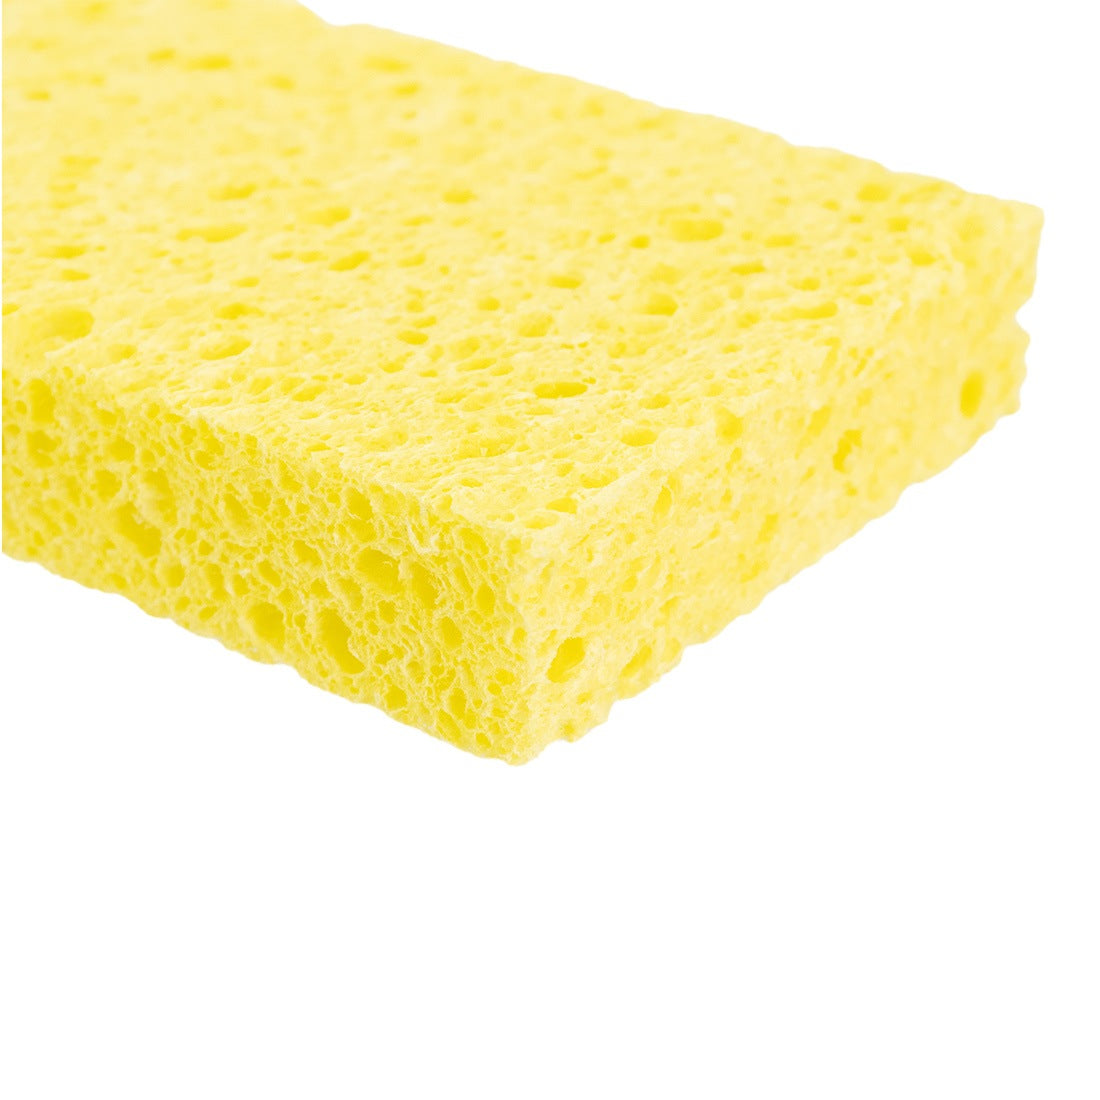 https://windowcleaner.com/cdn/shop/files/World-Enterprises-Cellulose-Sponge-2.jpg?v=1691169642&width=1946